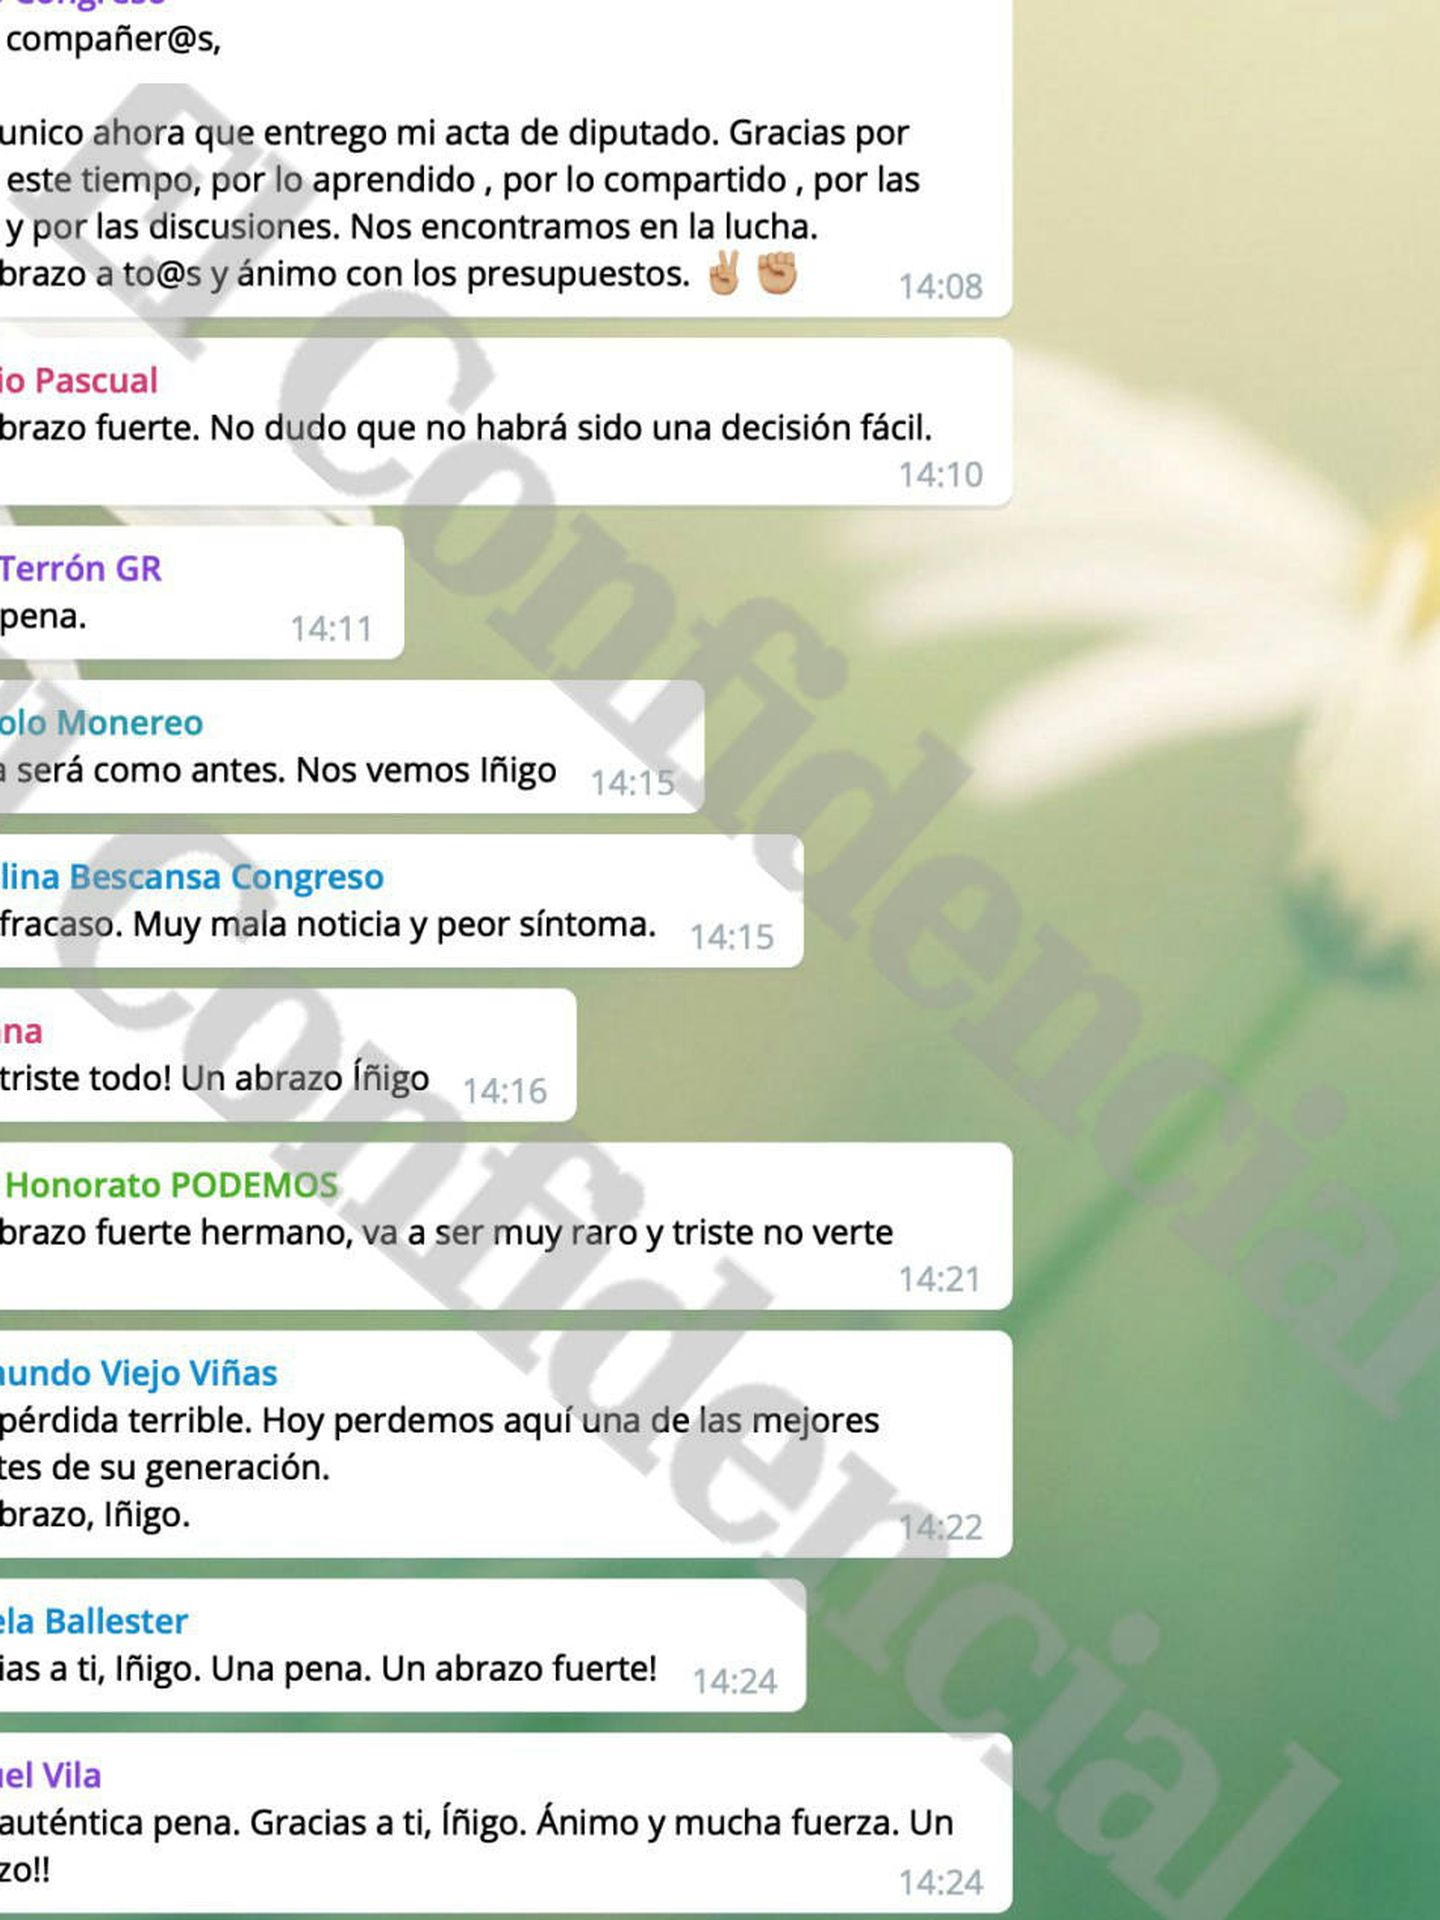 El chat de Telegram del Congreso.